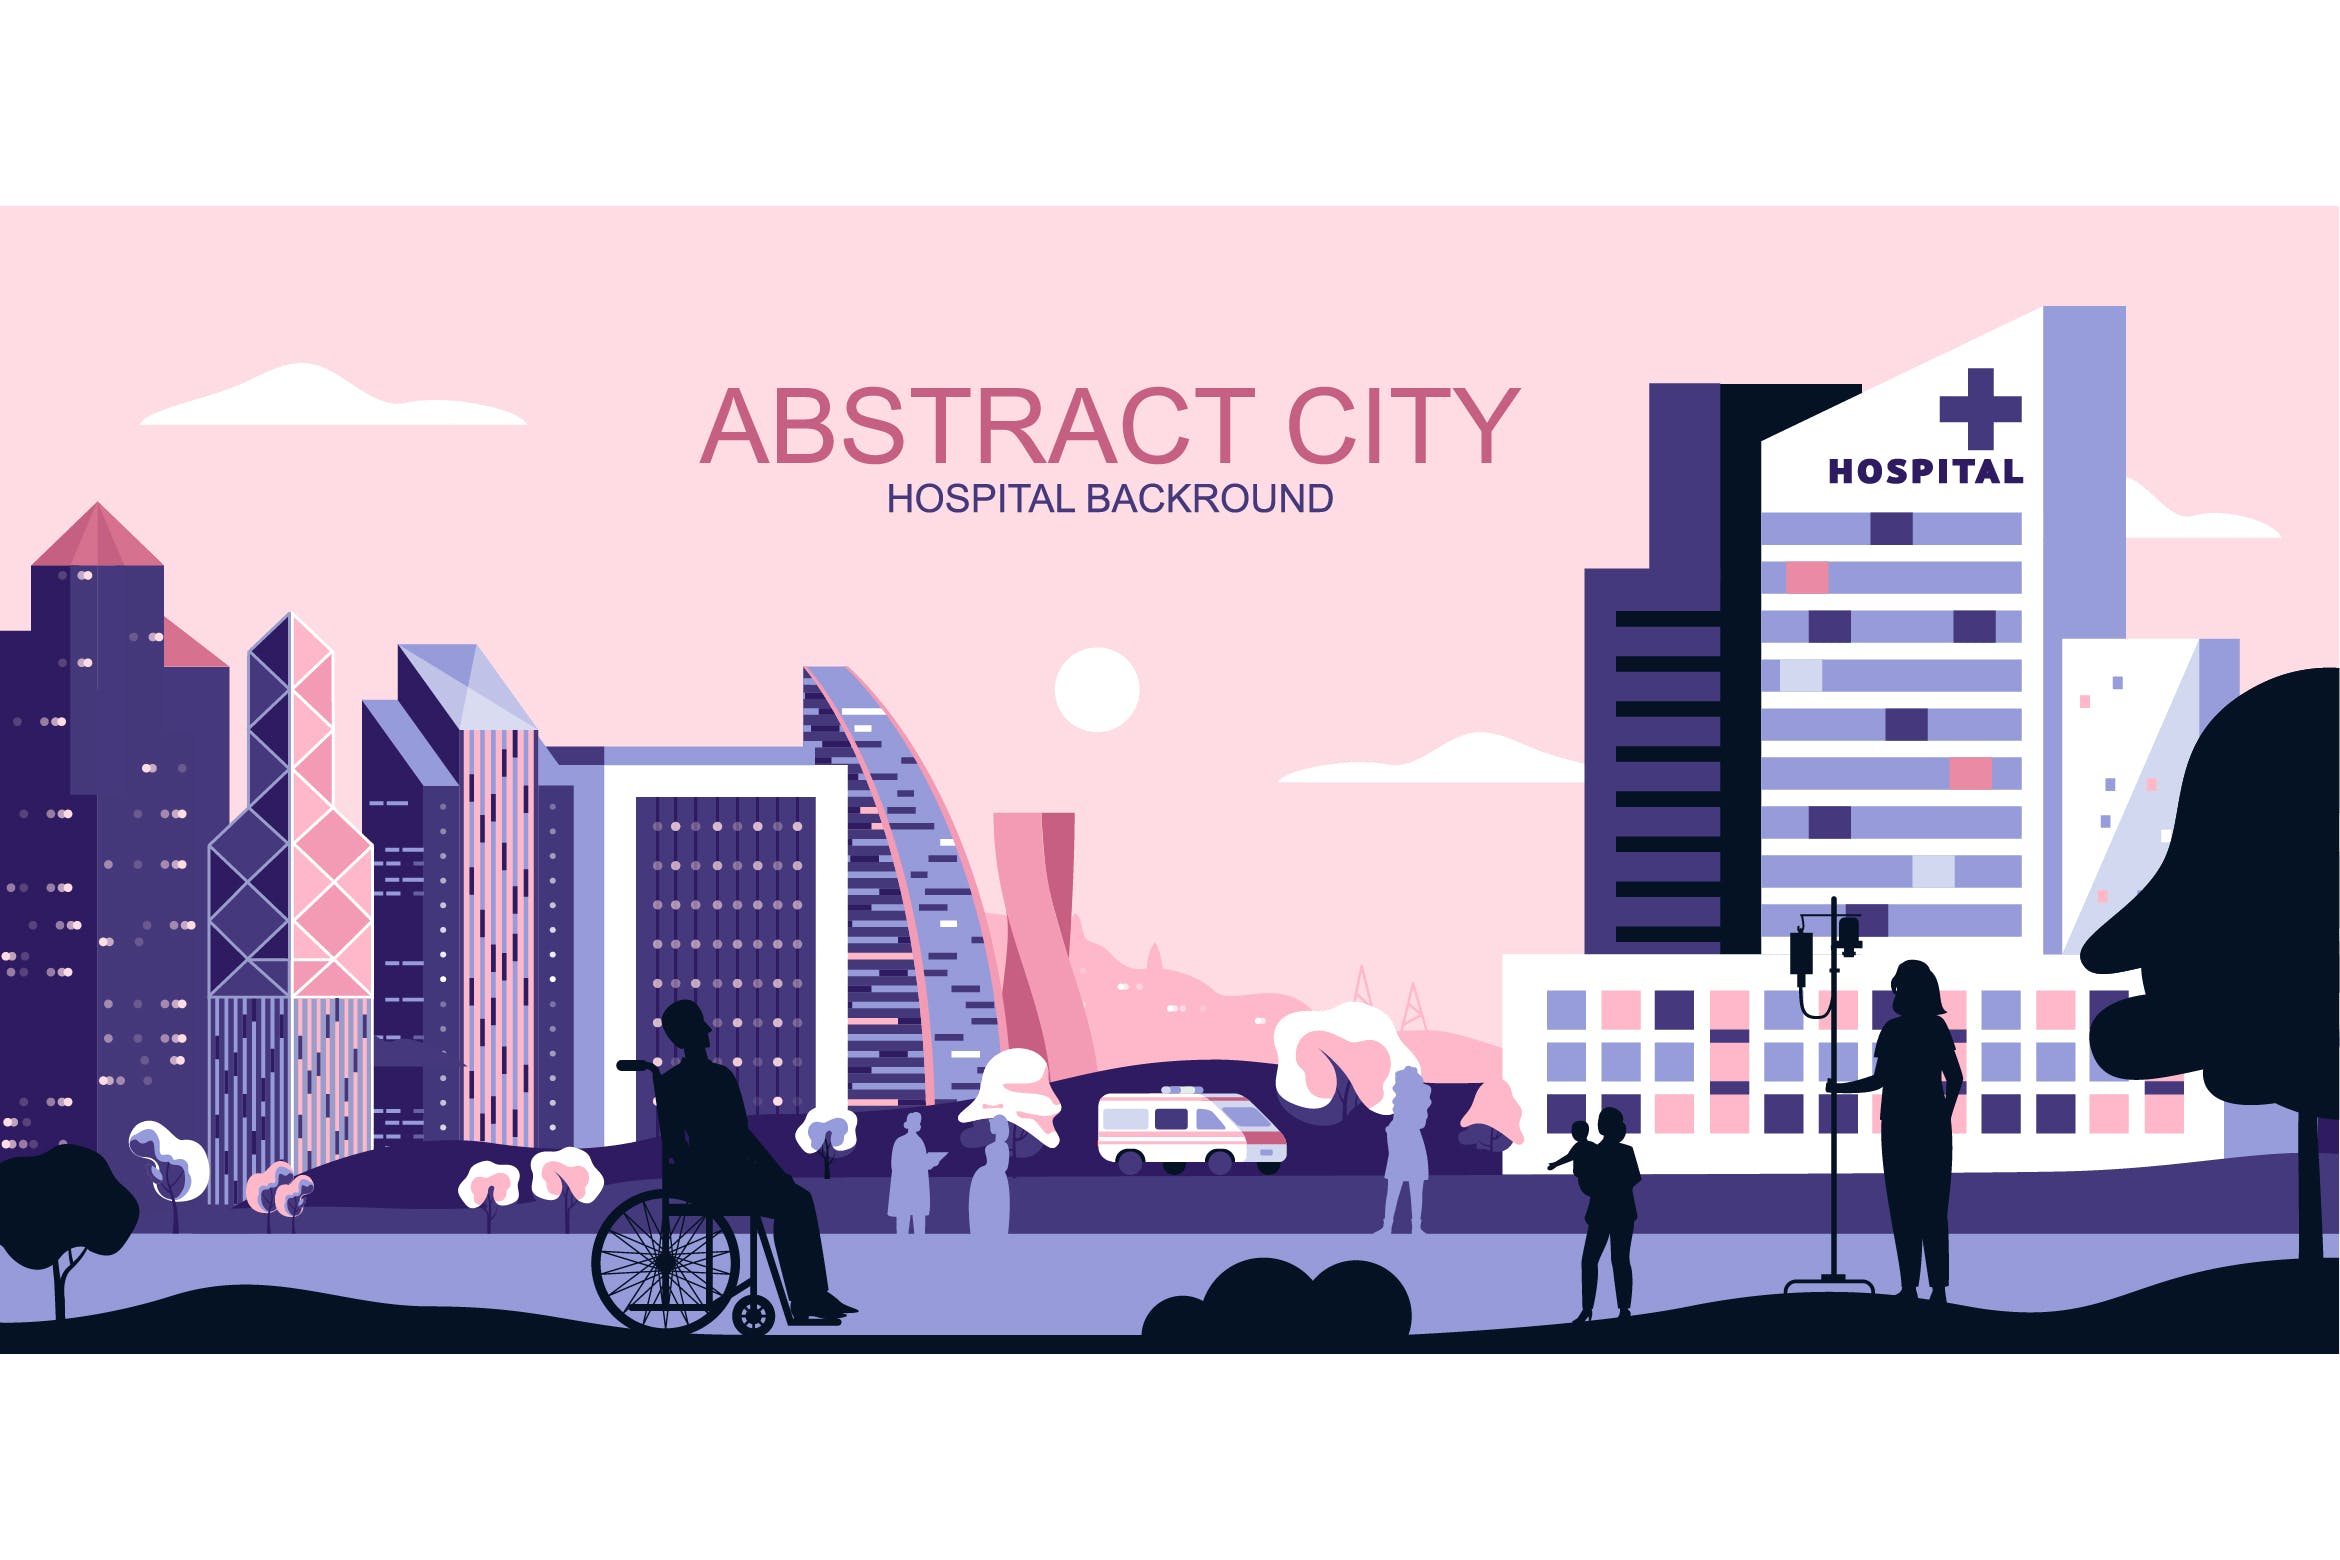 城市医疗主题网站Header设计矢量插画 Medical City Vector Illustration Header Website插图